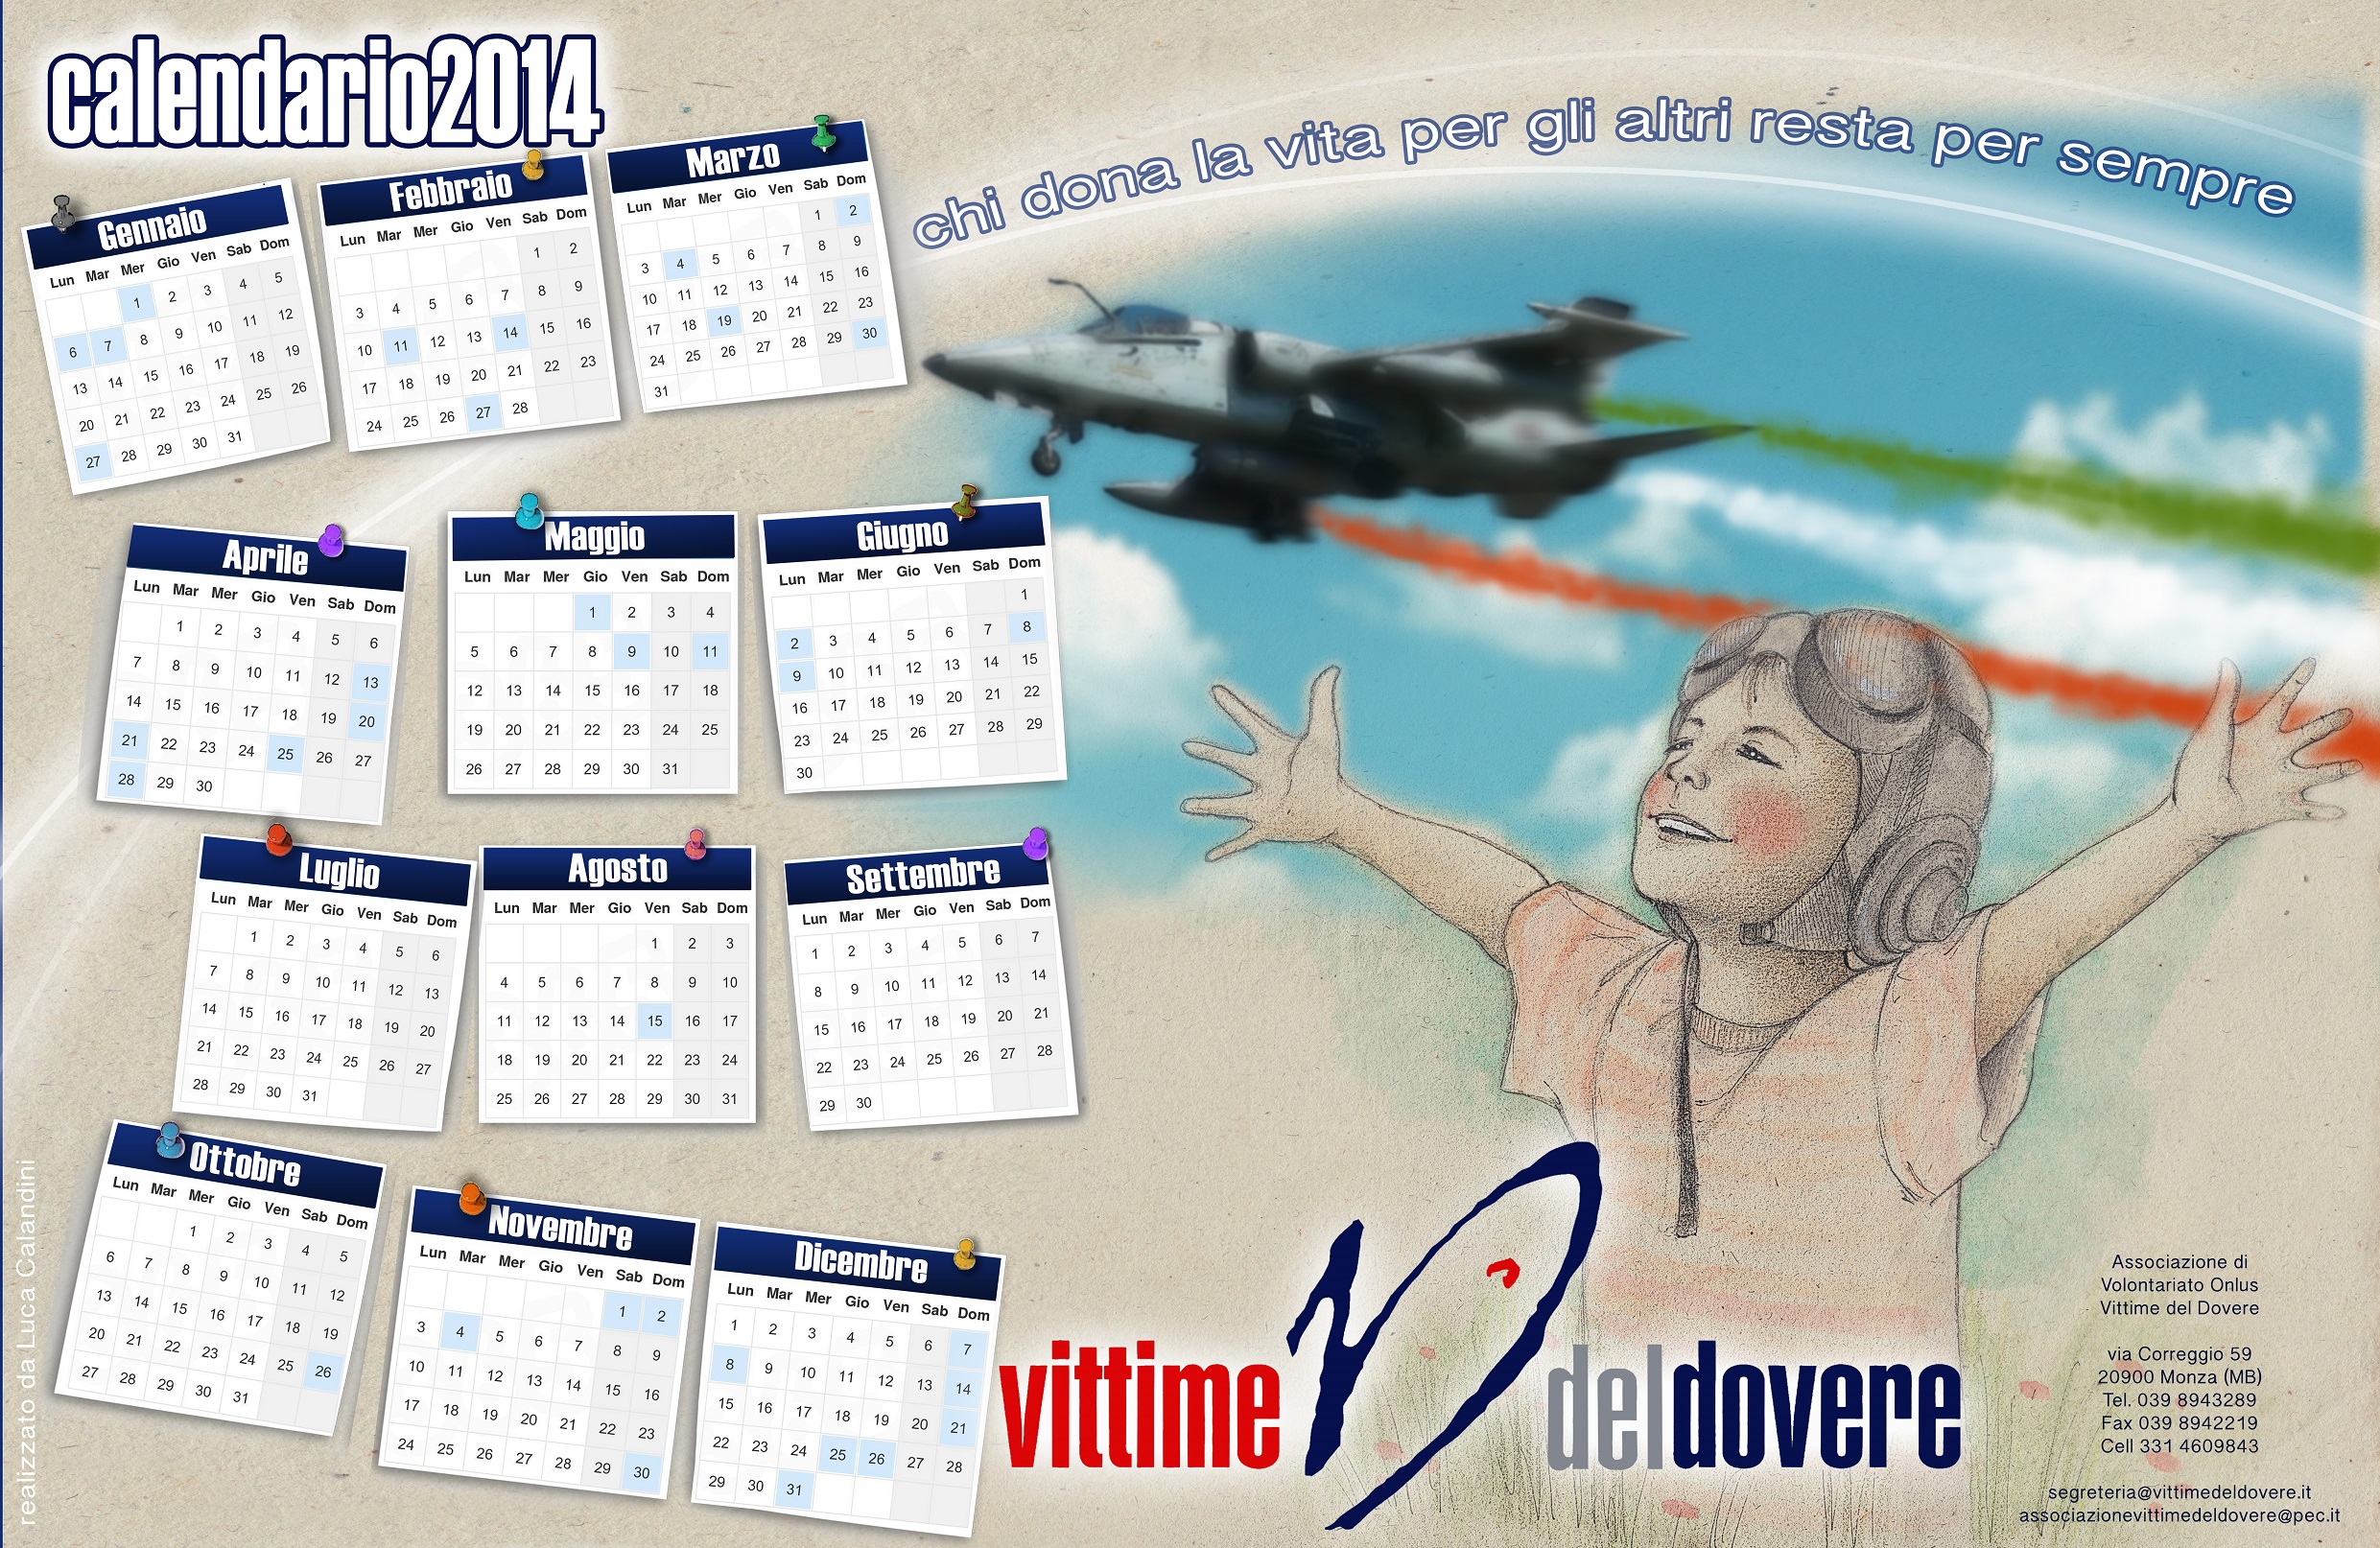 Associazione vittime del dovere - calendario 2014 - aeronautica -.jpg